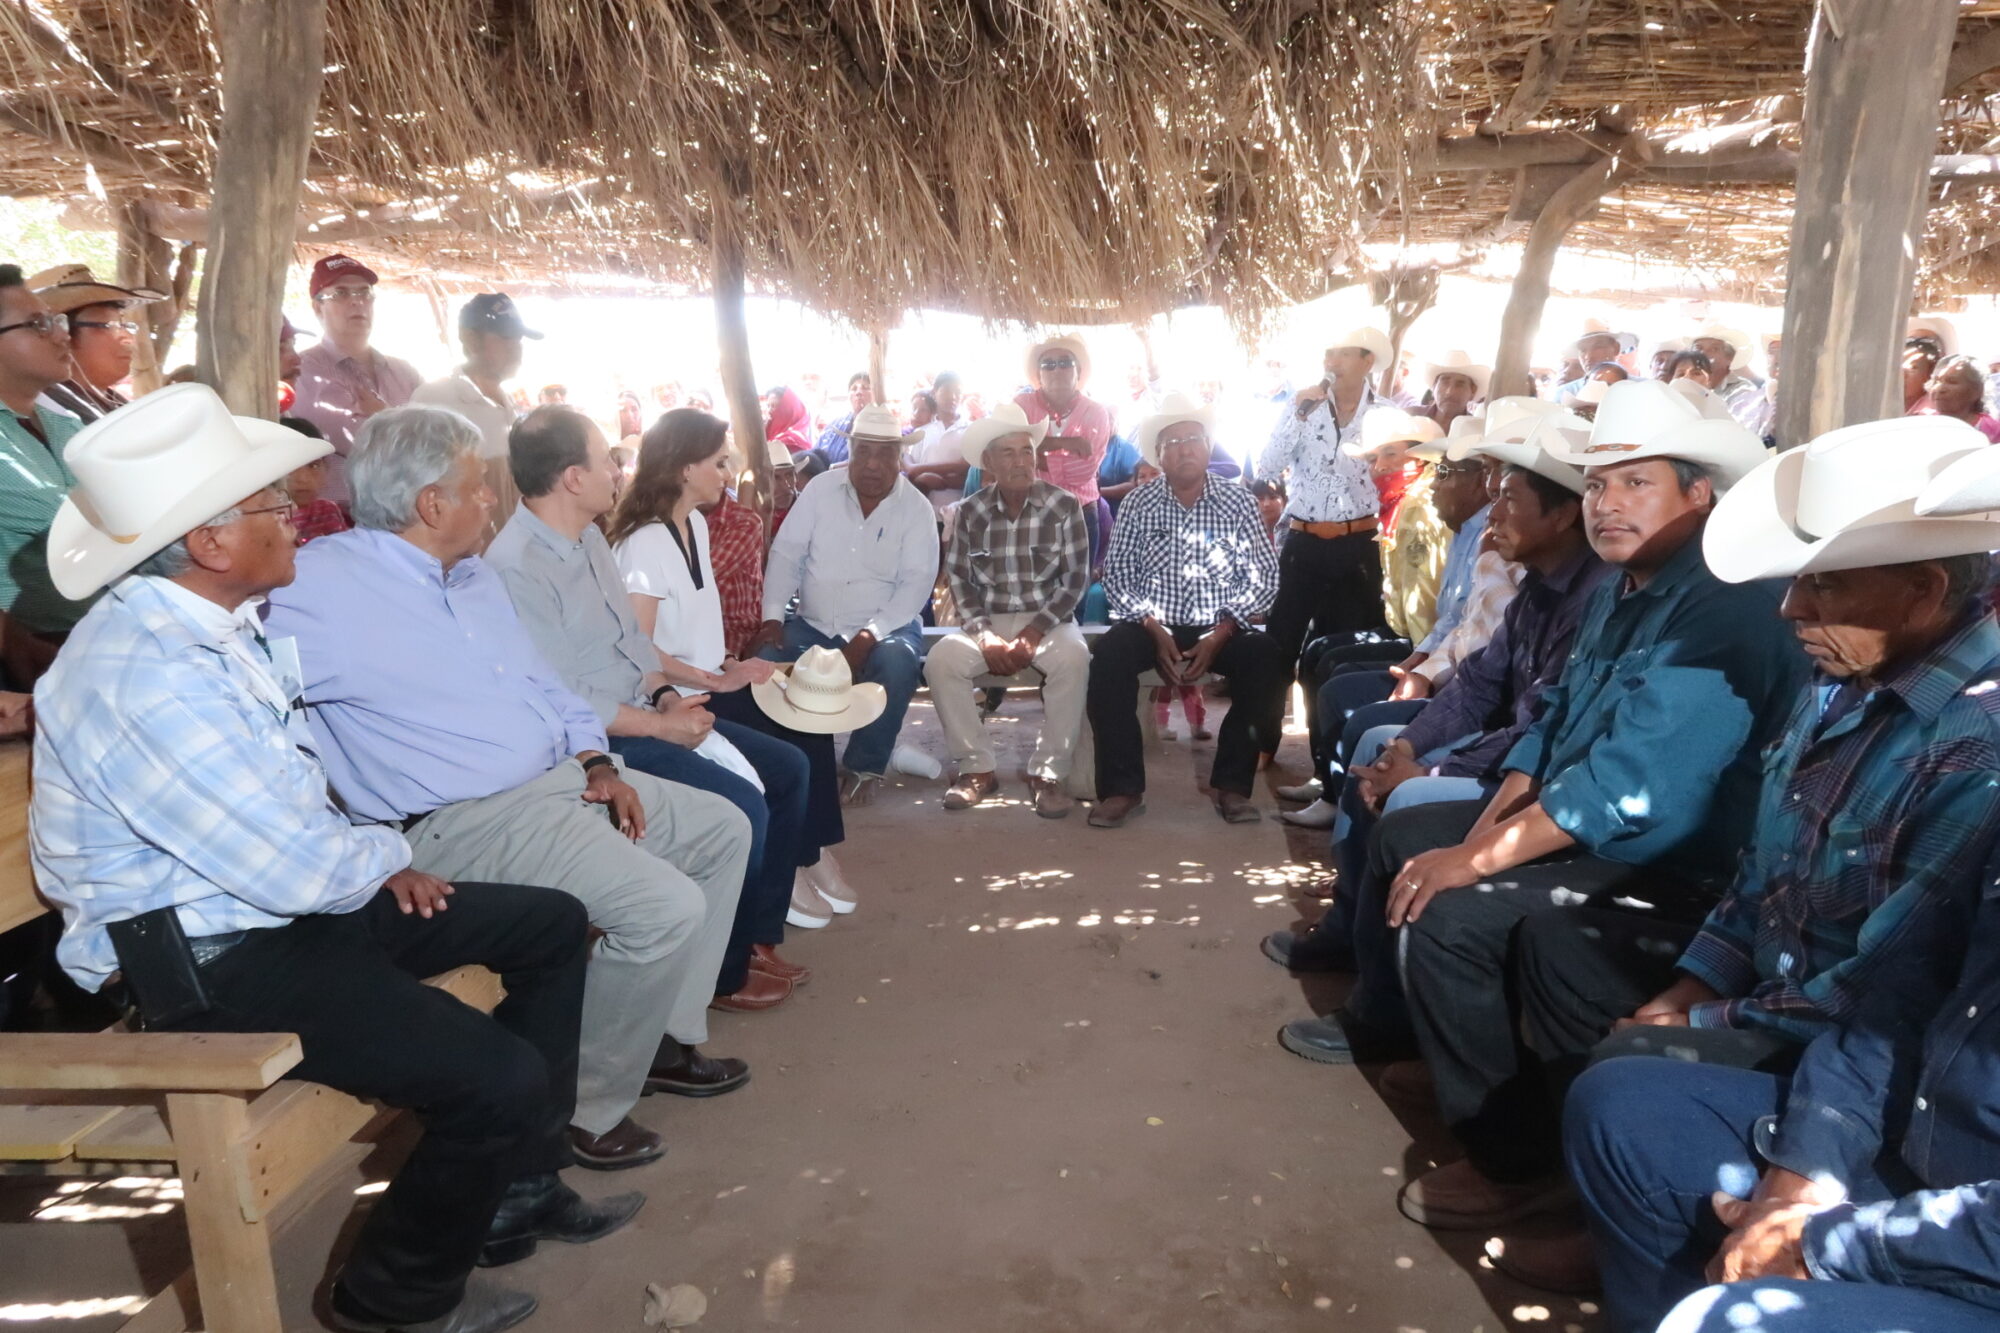 <p>Los ocho grupos Yaqui y el gobierno mexicano firmaron, en agosto pasado, un acuerdo para garantizar los derechos territoriales, incluyendo la gestión del agua, de ese pueblo indígena. (Imagen: <span class="author">Cortesía Gobierno de México)</span></p>